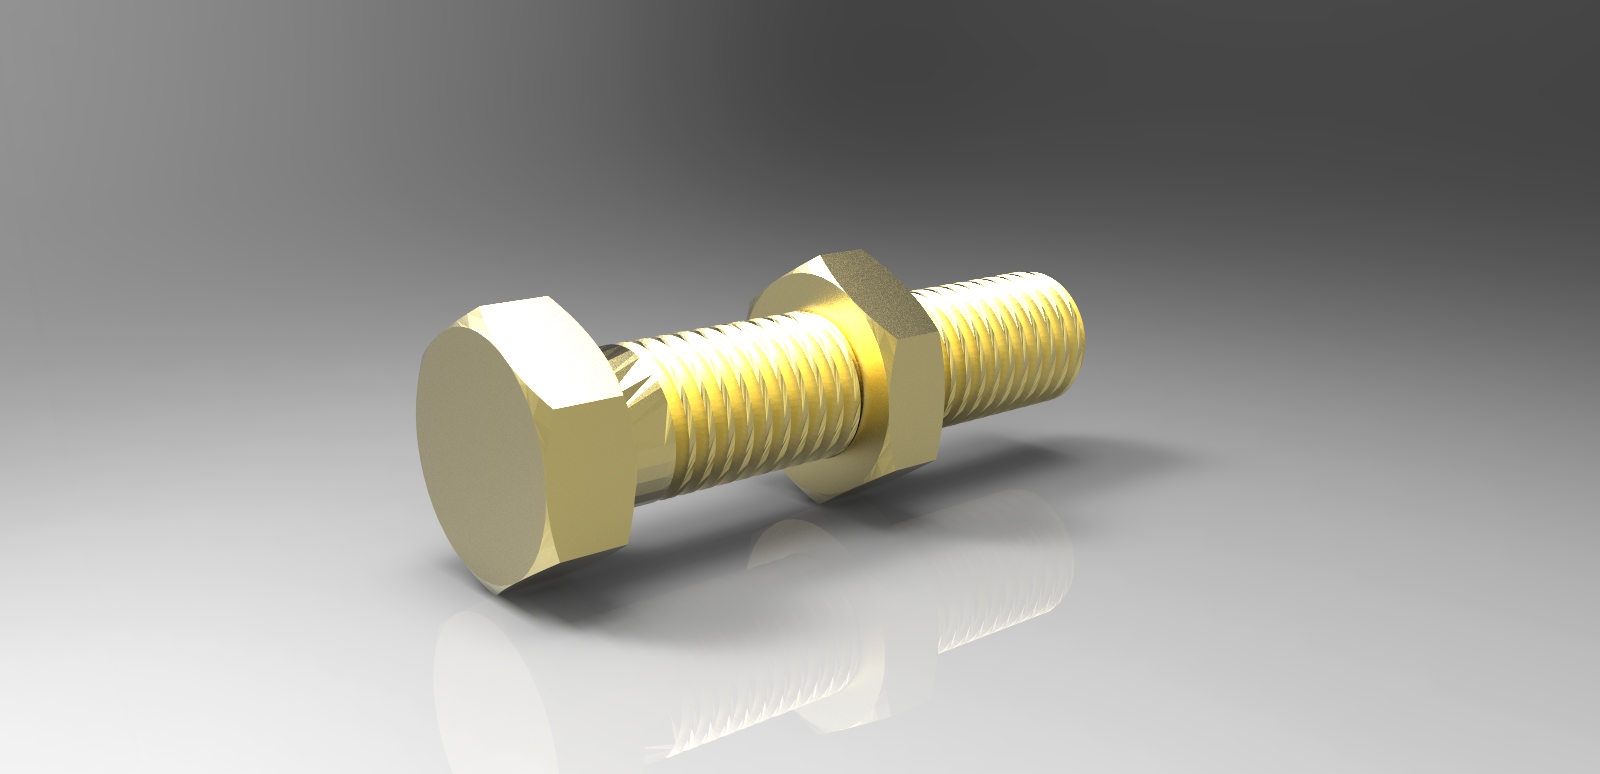 用SolidWorks设计的螺母螺栓组件